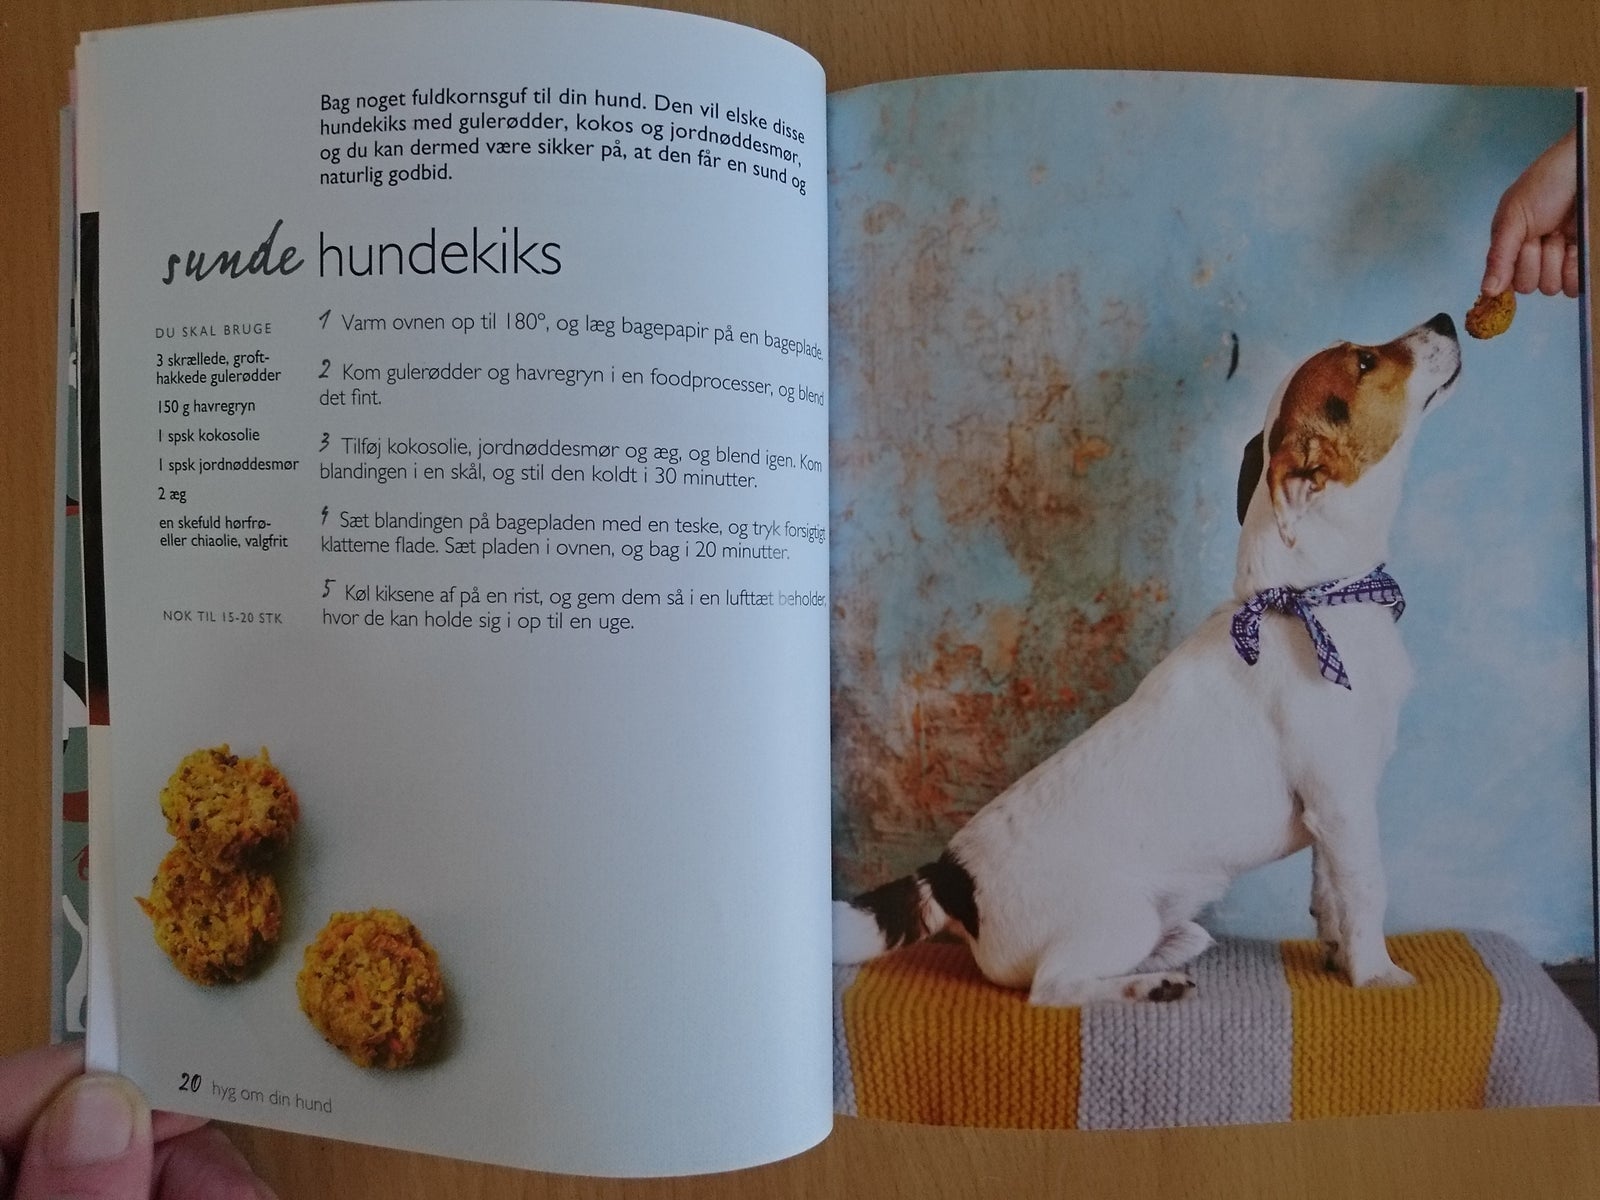 Hyg om din hund, Blondel, emne: dyr – dba.dk Køb og af Nyt og Brugt